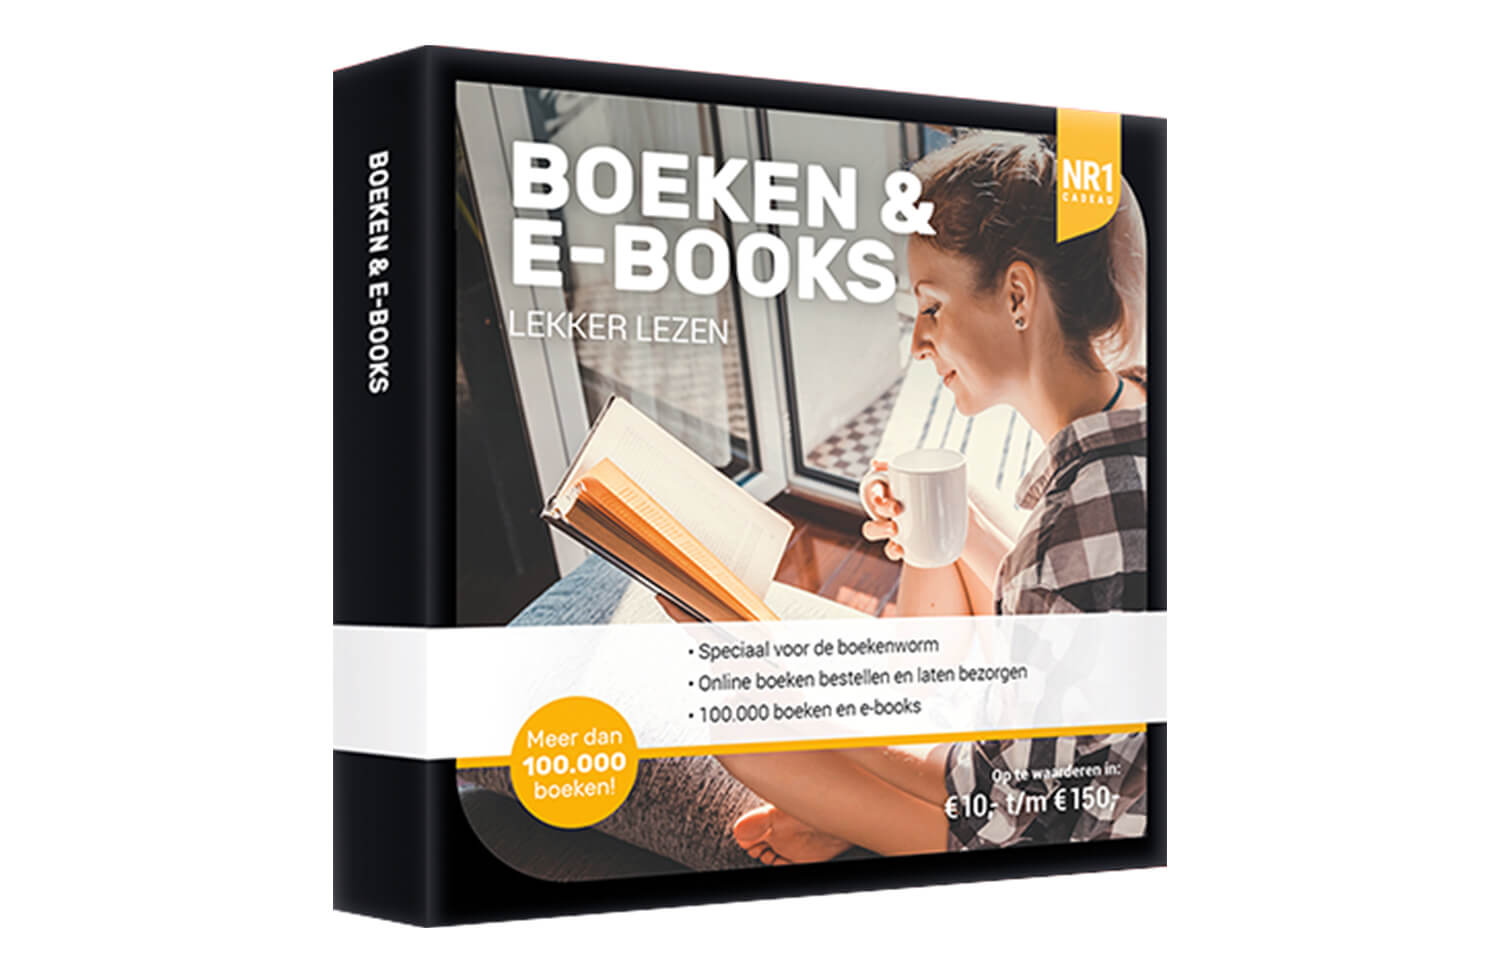 Array Leuk vinden via NR1 Boeken en E-books | Cadeaukaart.nl